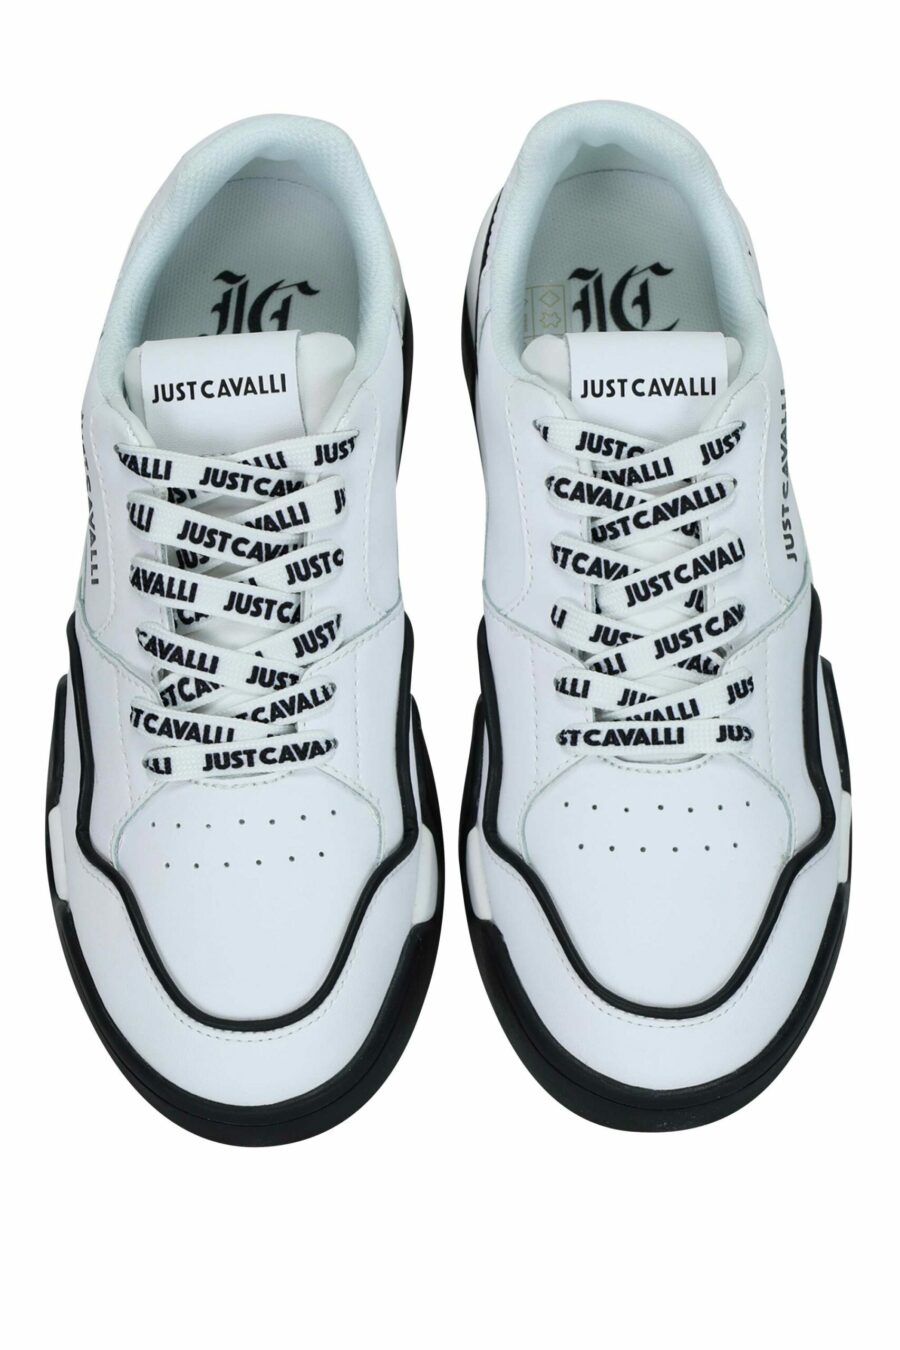 Zapatillas blancas con detalles negros y logo monocromático - 8052672737144 4 scaled